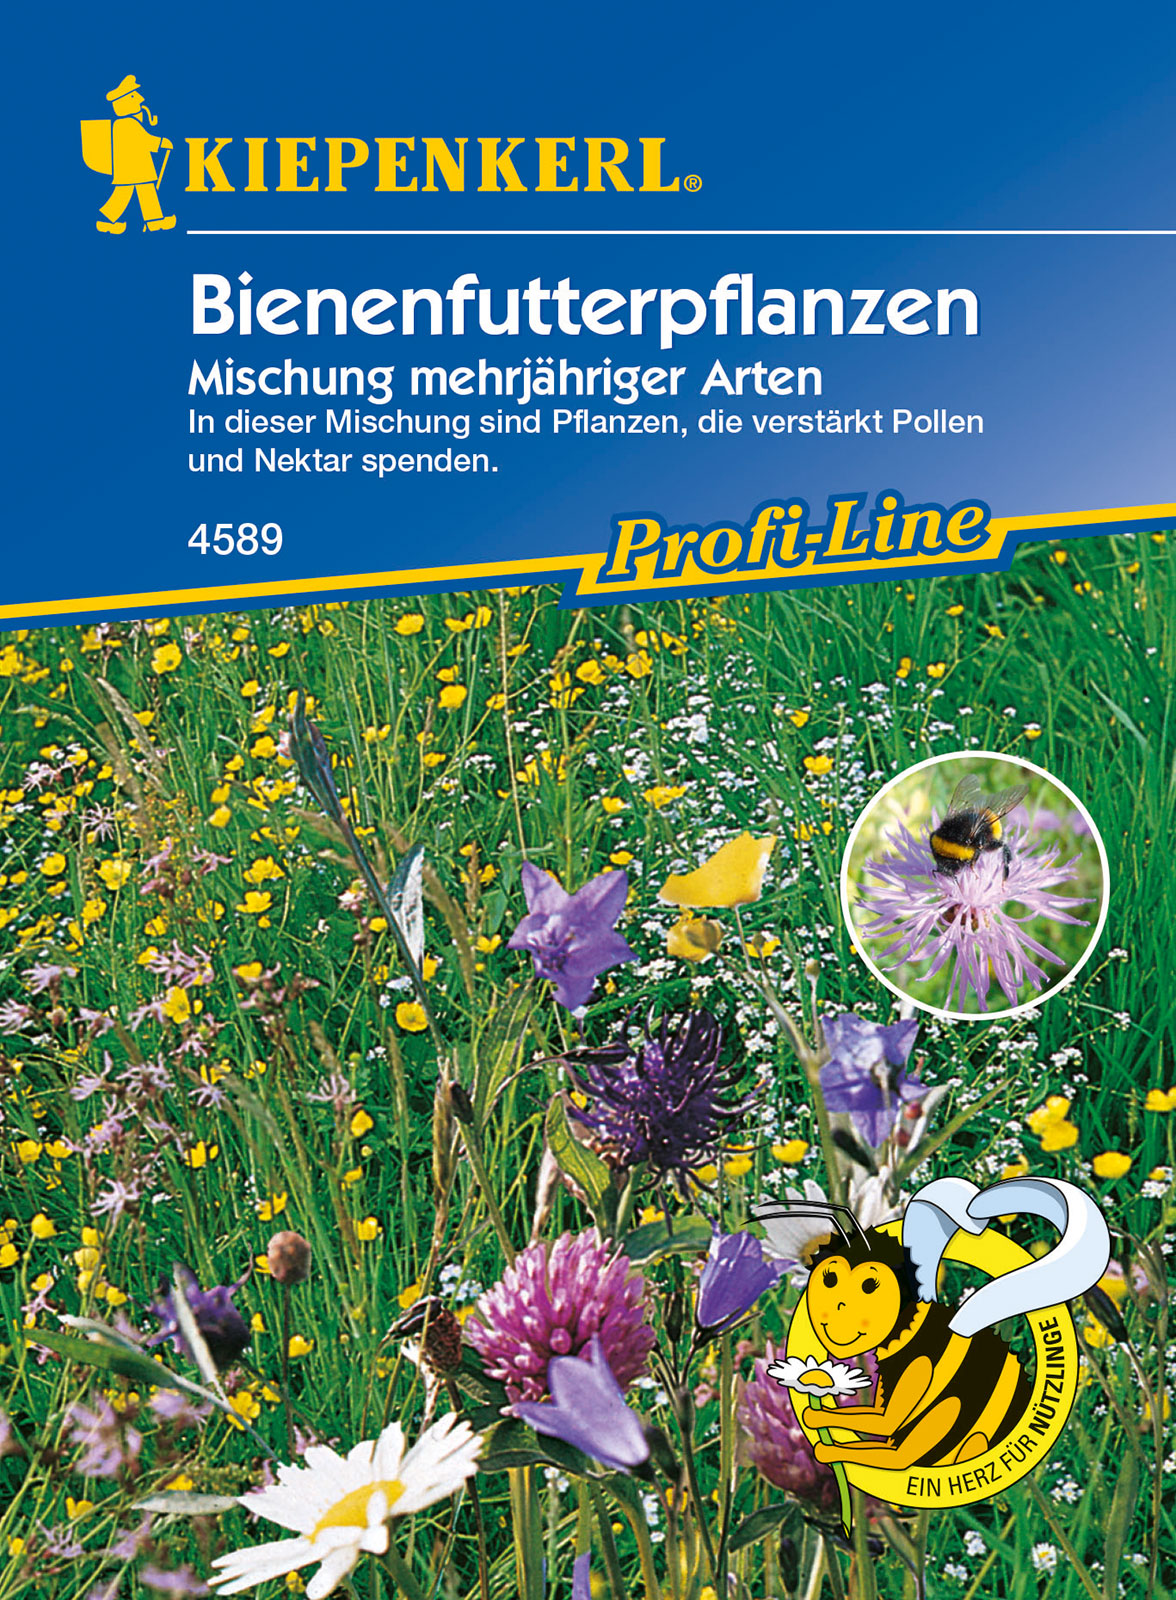 Bienenzucht (mehrjährige Saatgutmischung) Kiepenkerll 5-8 m2